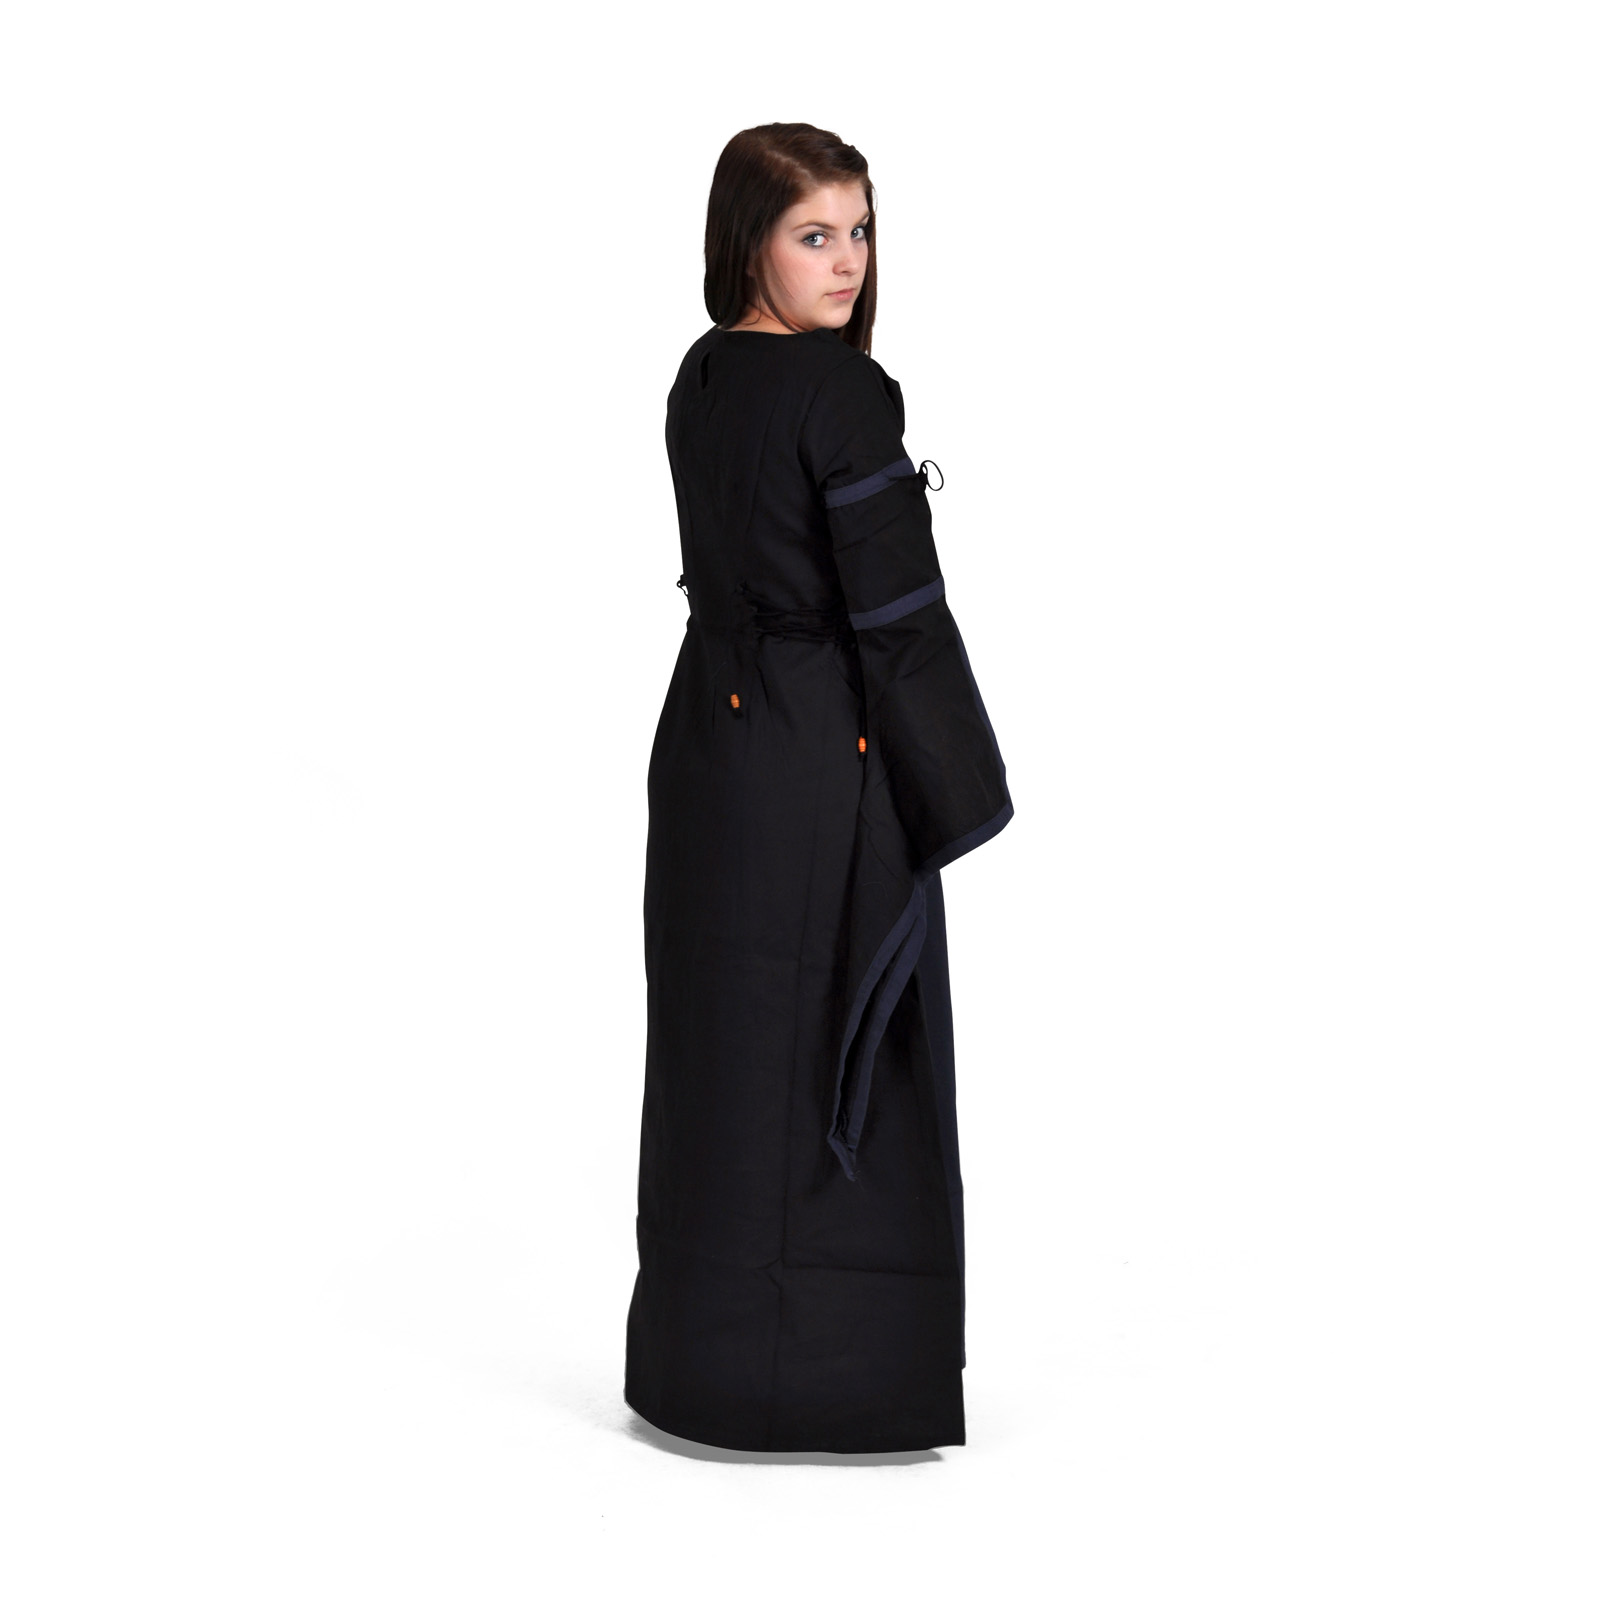 Elisa - Middeleeuwse jurk zwart-blauw